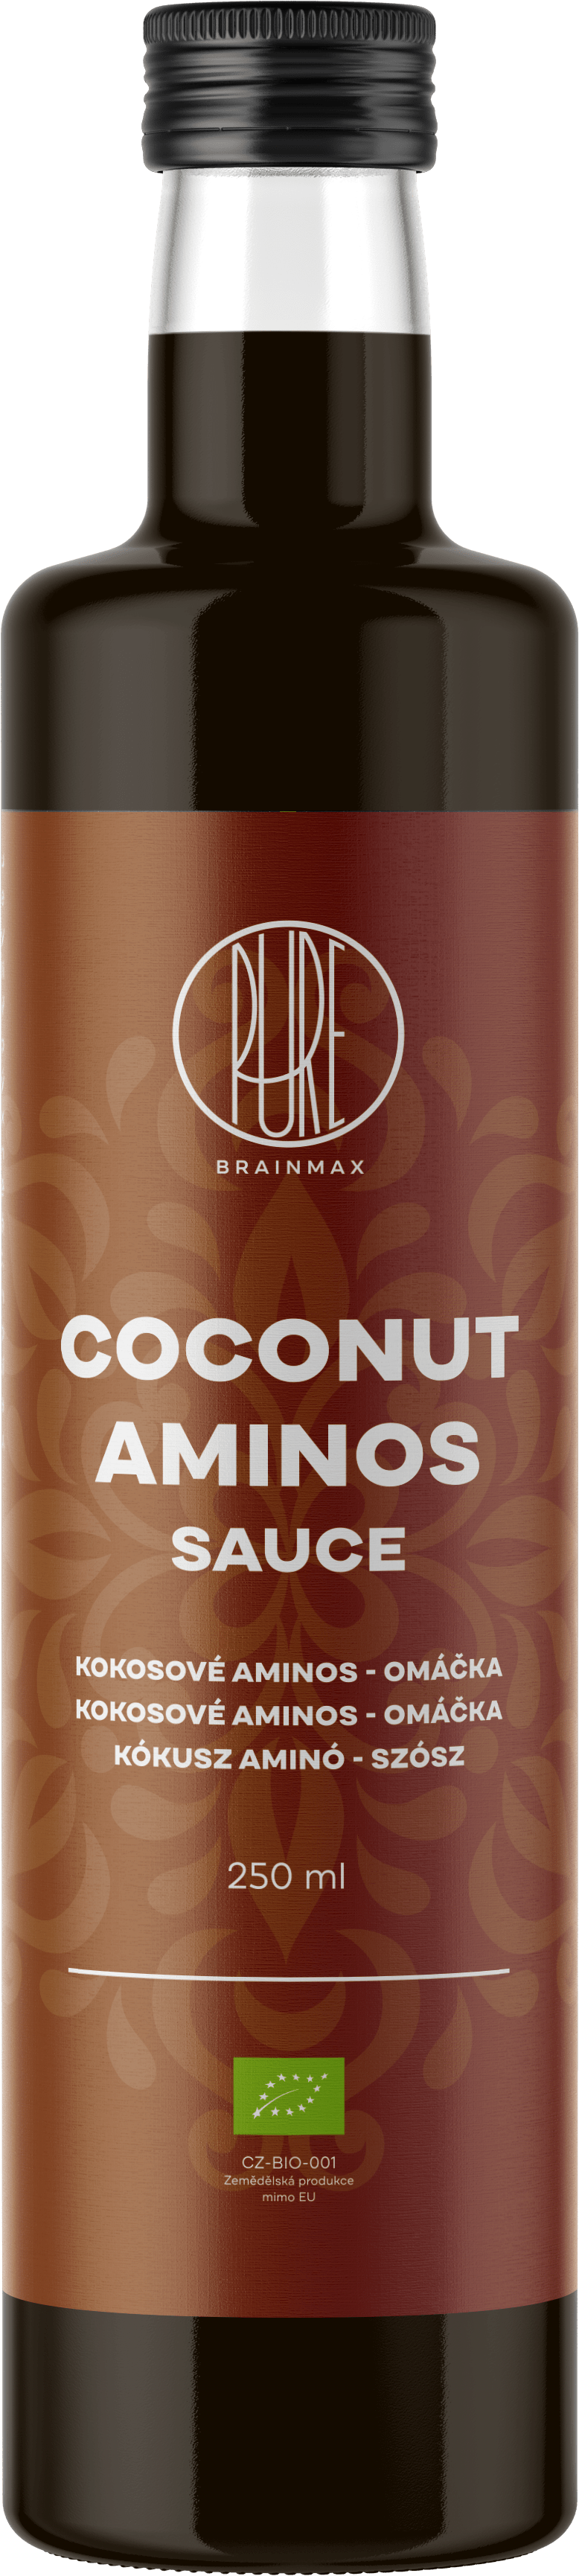 BrainMax Pure Coconut Aminos Sauce, Kokosové aminos BIO, 250 ml *CZ-BIO-001 certifikát